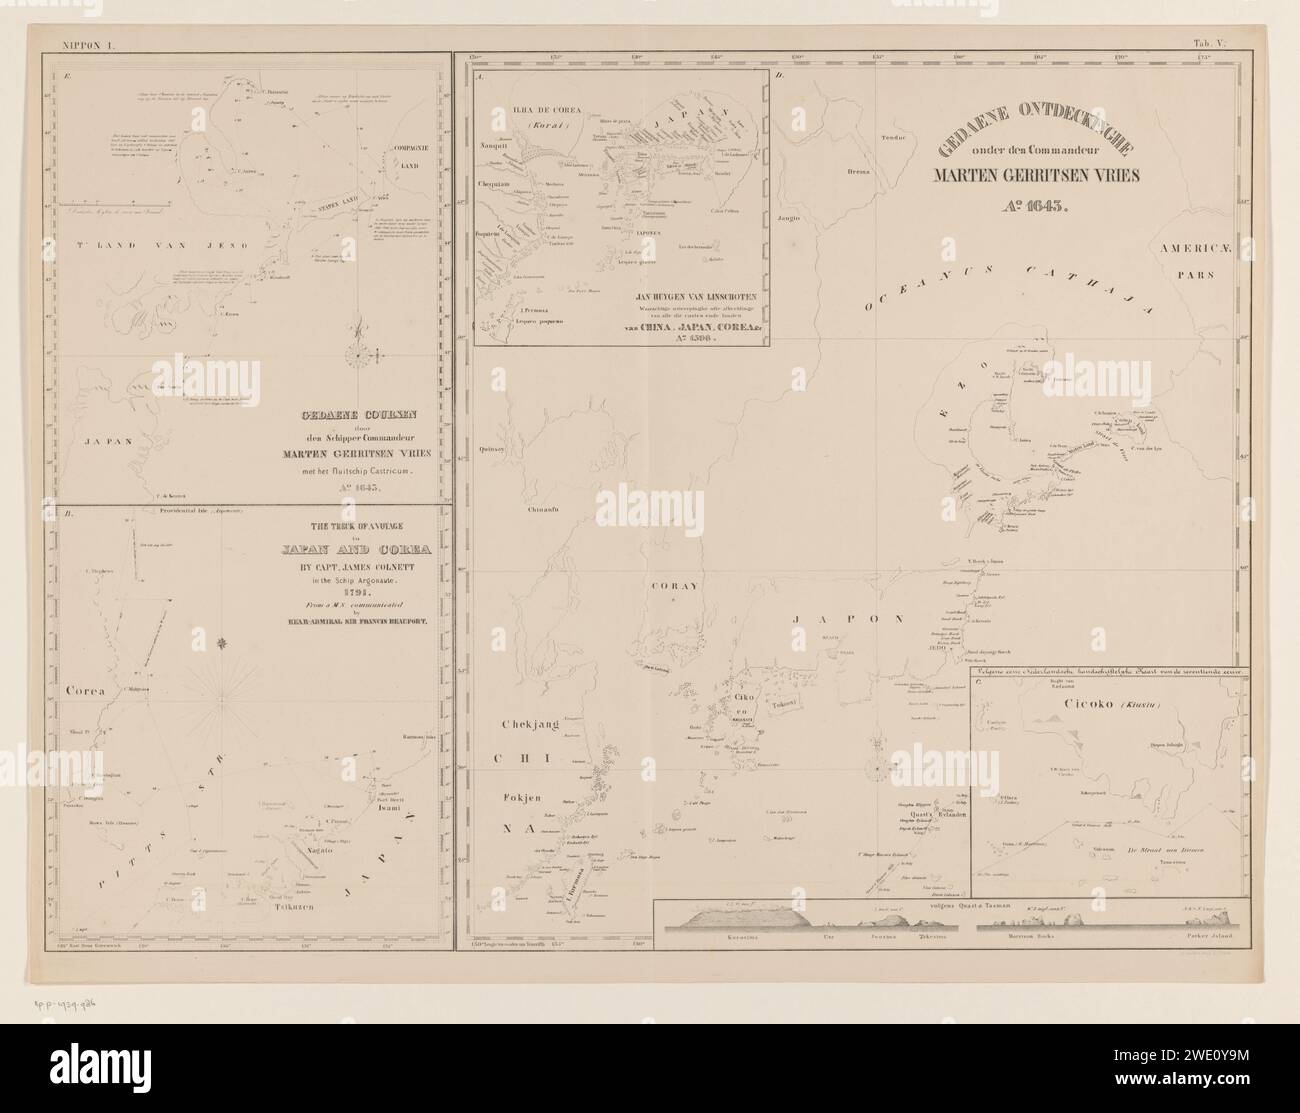 Karten von Entdeckungsreisen um Japan auf einem Blatt, P.C. Tesch, 1849 - 1899 Druck oben rechts nummeriert: V. Papierkarten getrennter Länder oder Regionen. Entdeckungsreise, Expedition, Entdeckungsreise nach Japan Stockfoto